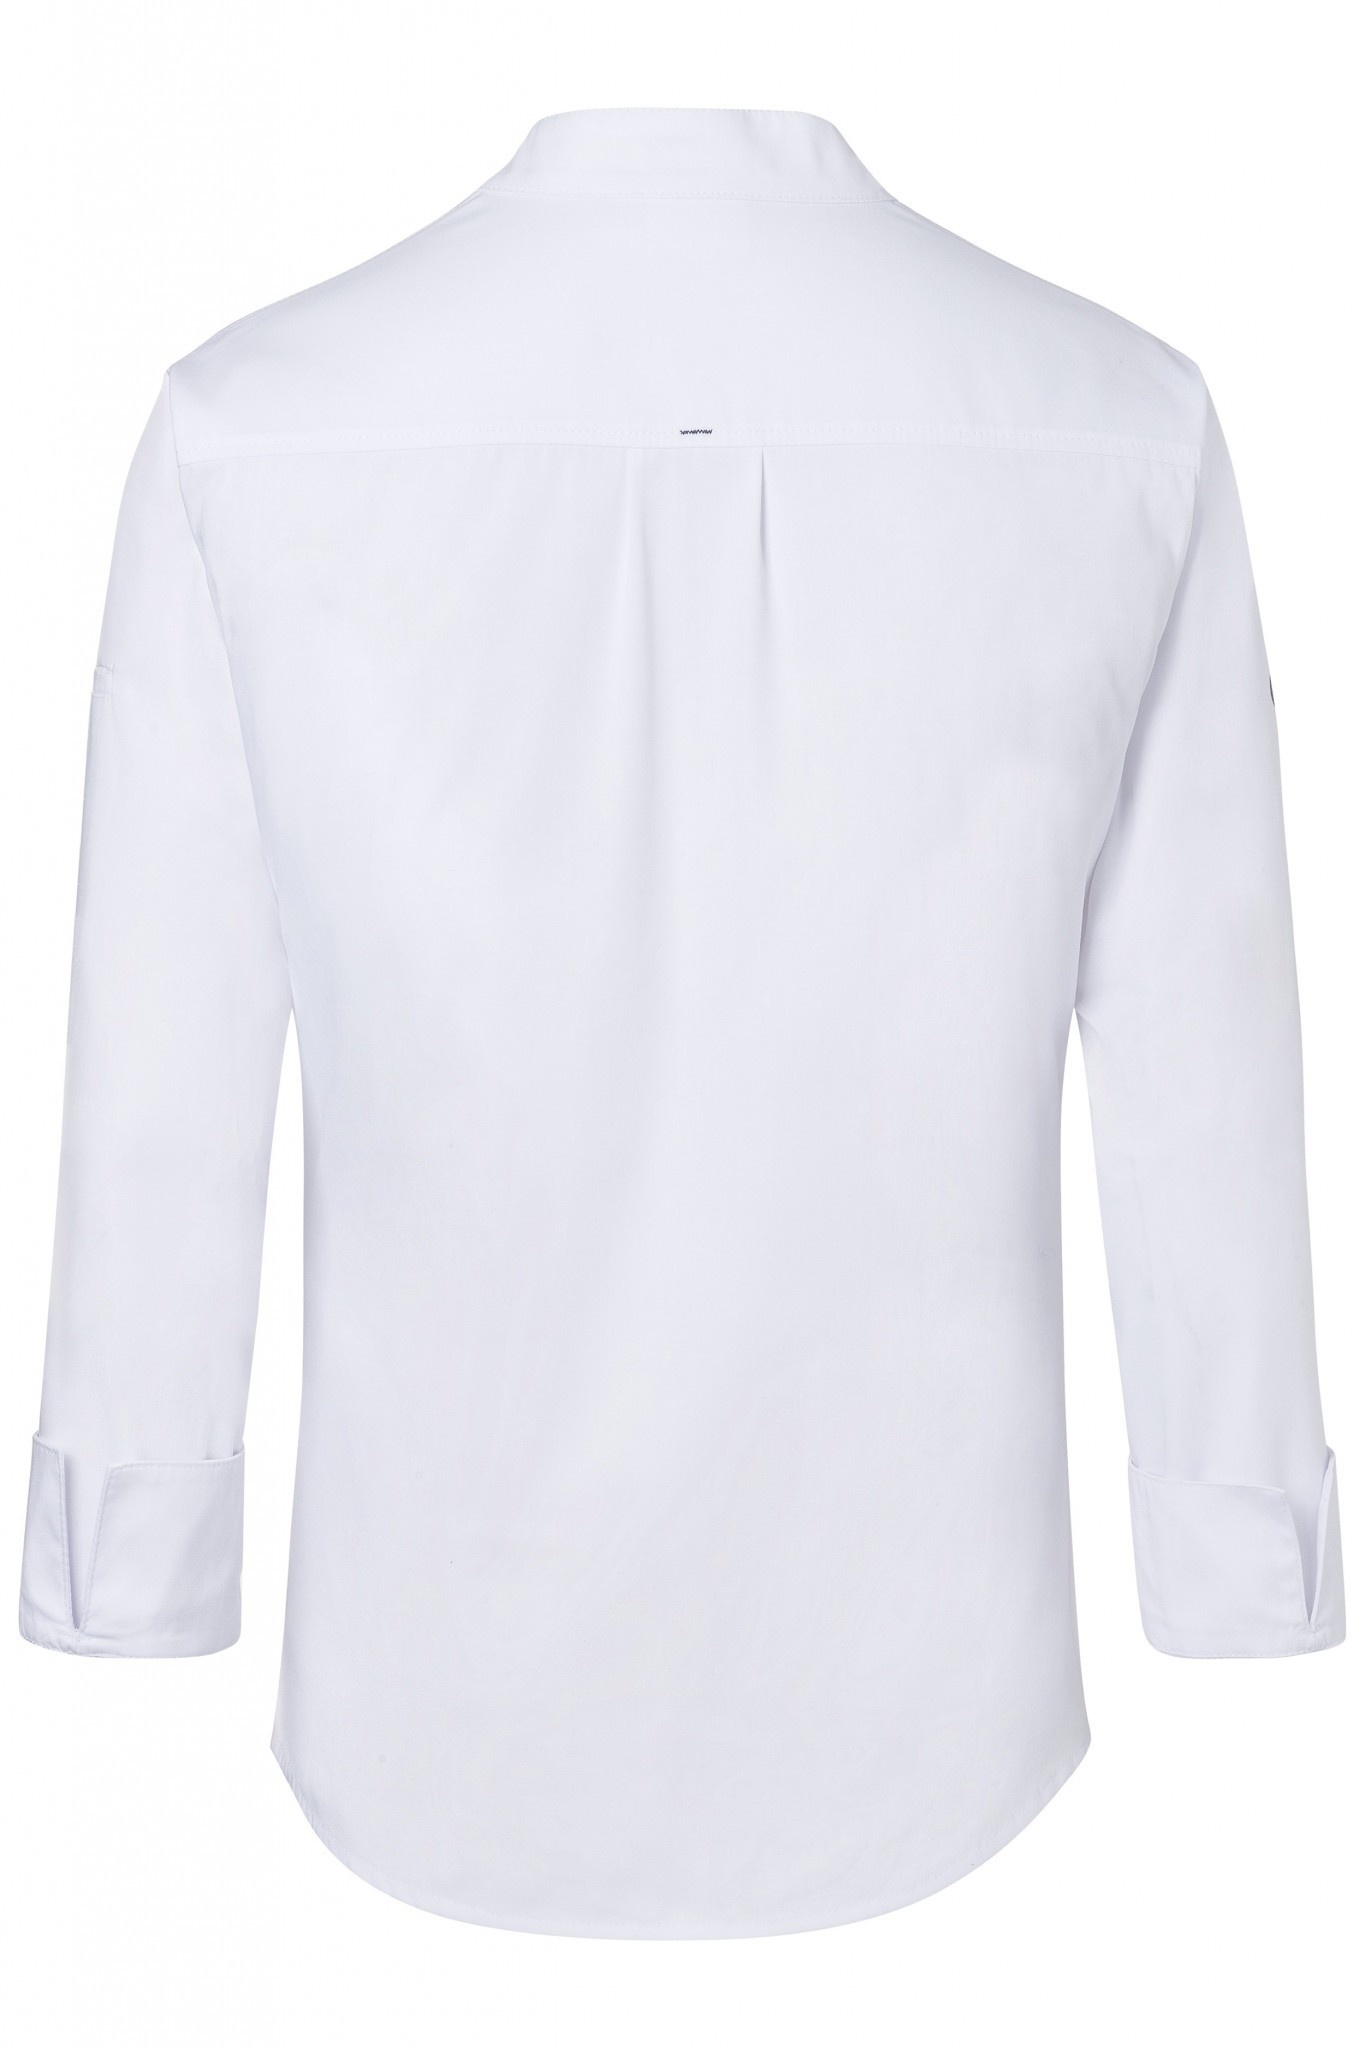 Kochjacke Modern Touch | Weiß | 50% Polyester / 50% Baumwolle | Erhältlich in 10 Größen